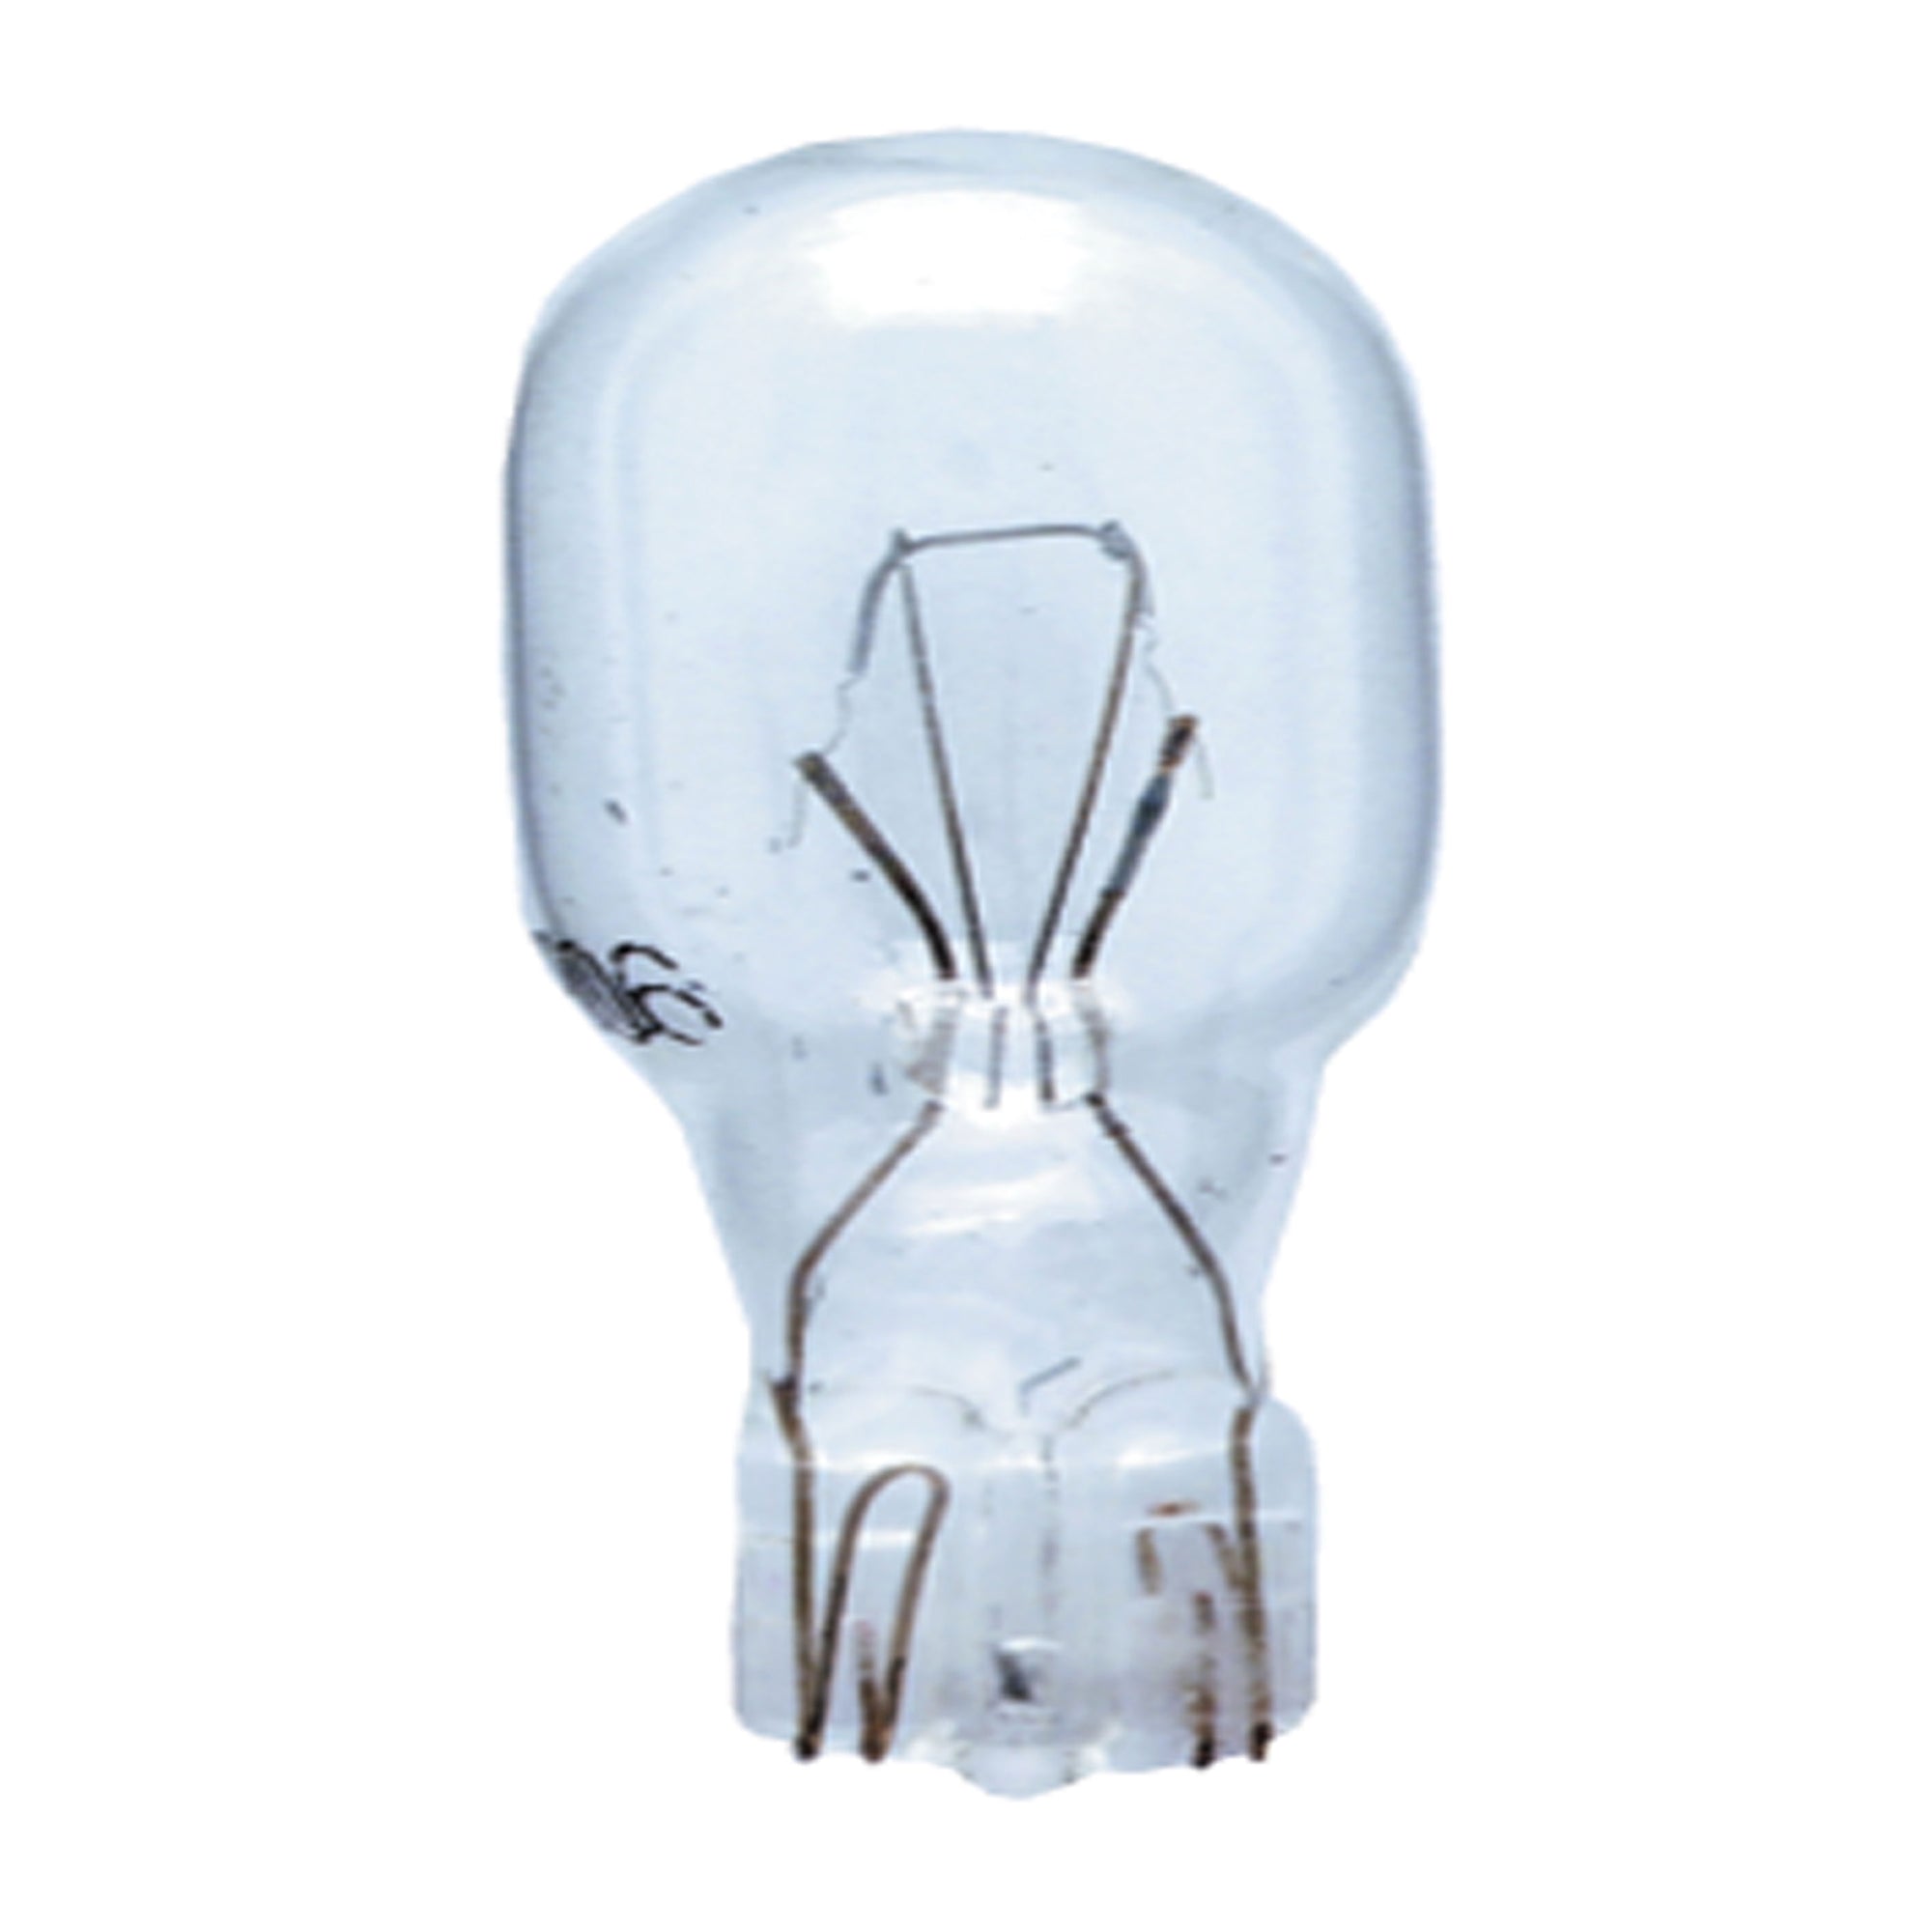 Perko Wedge Style Light Bulb for Perko Light